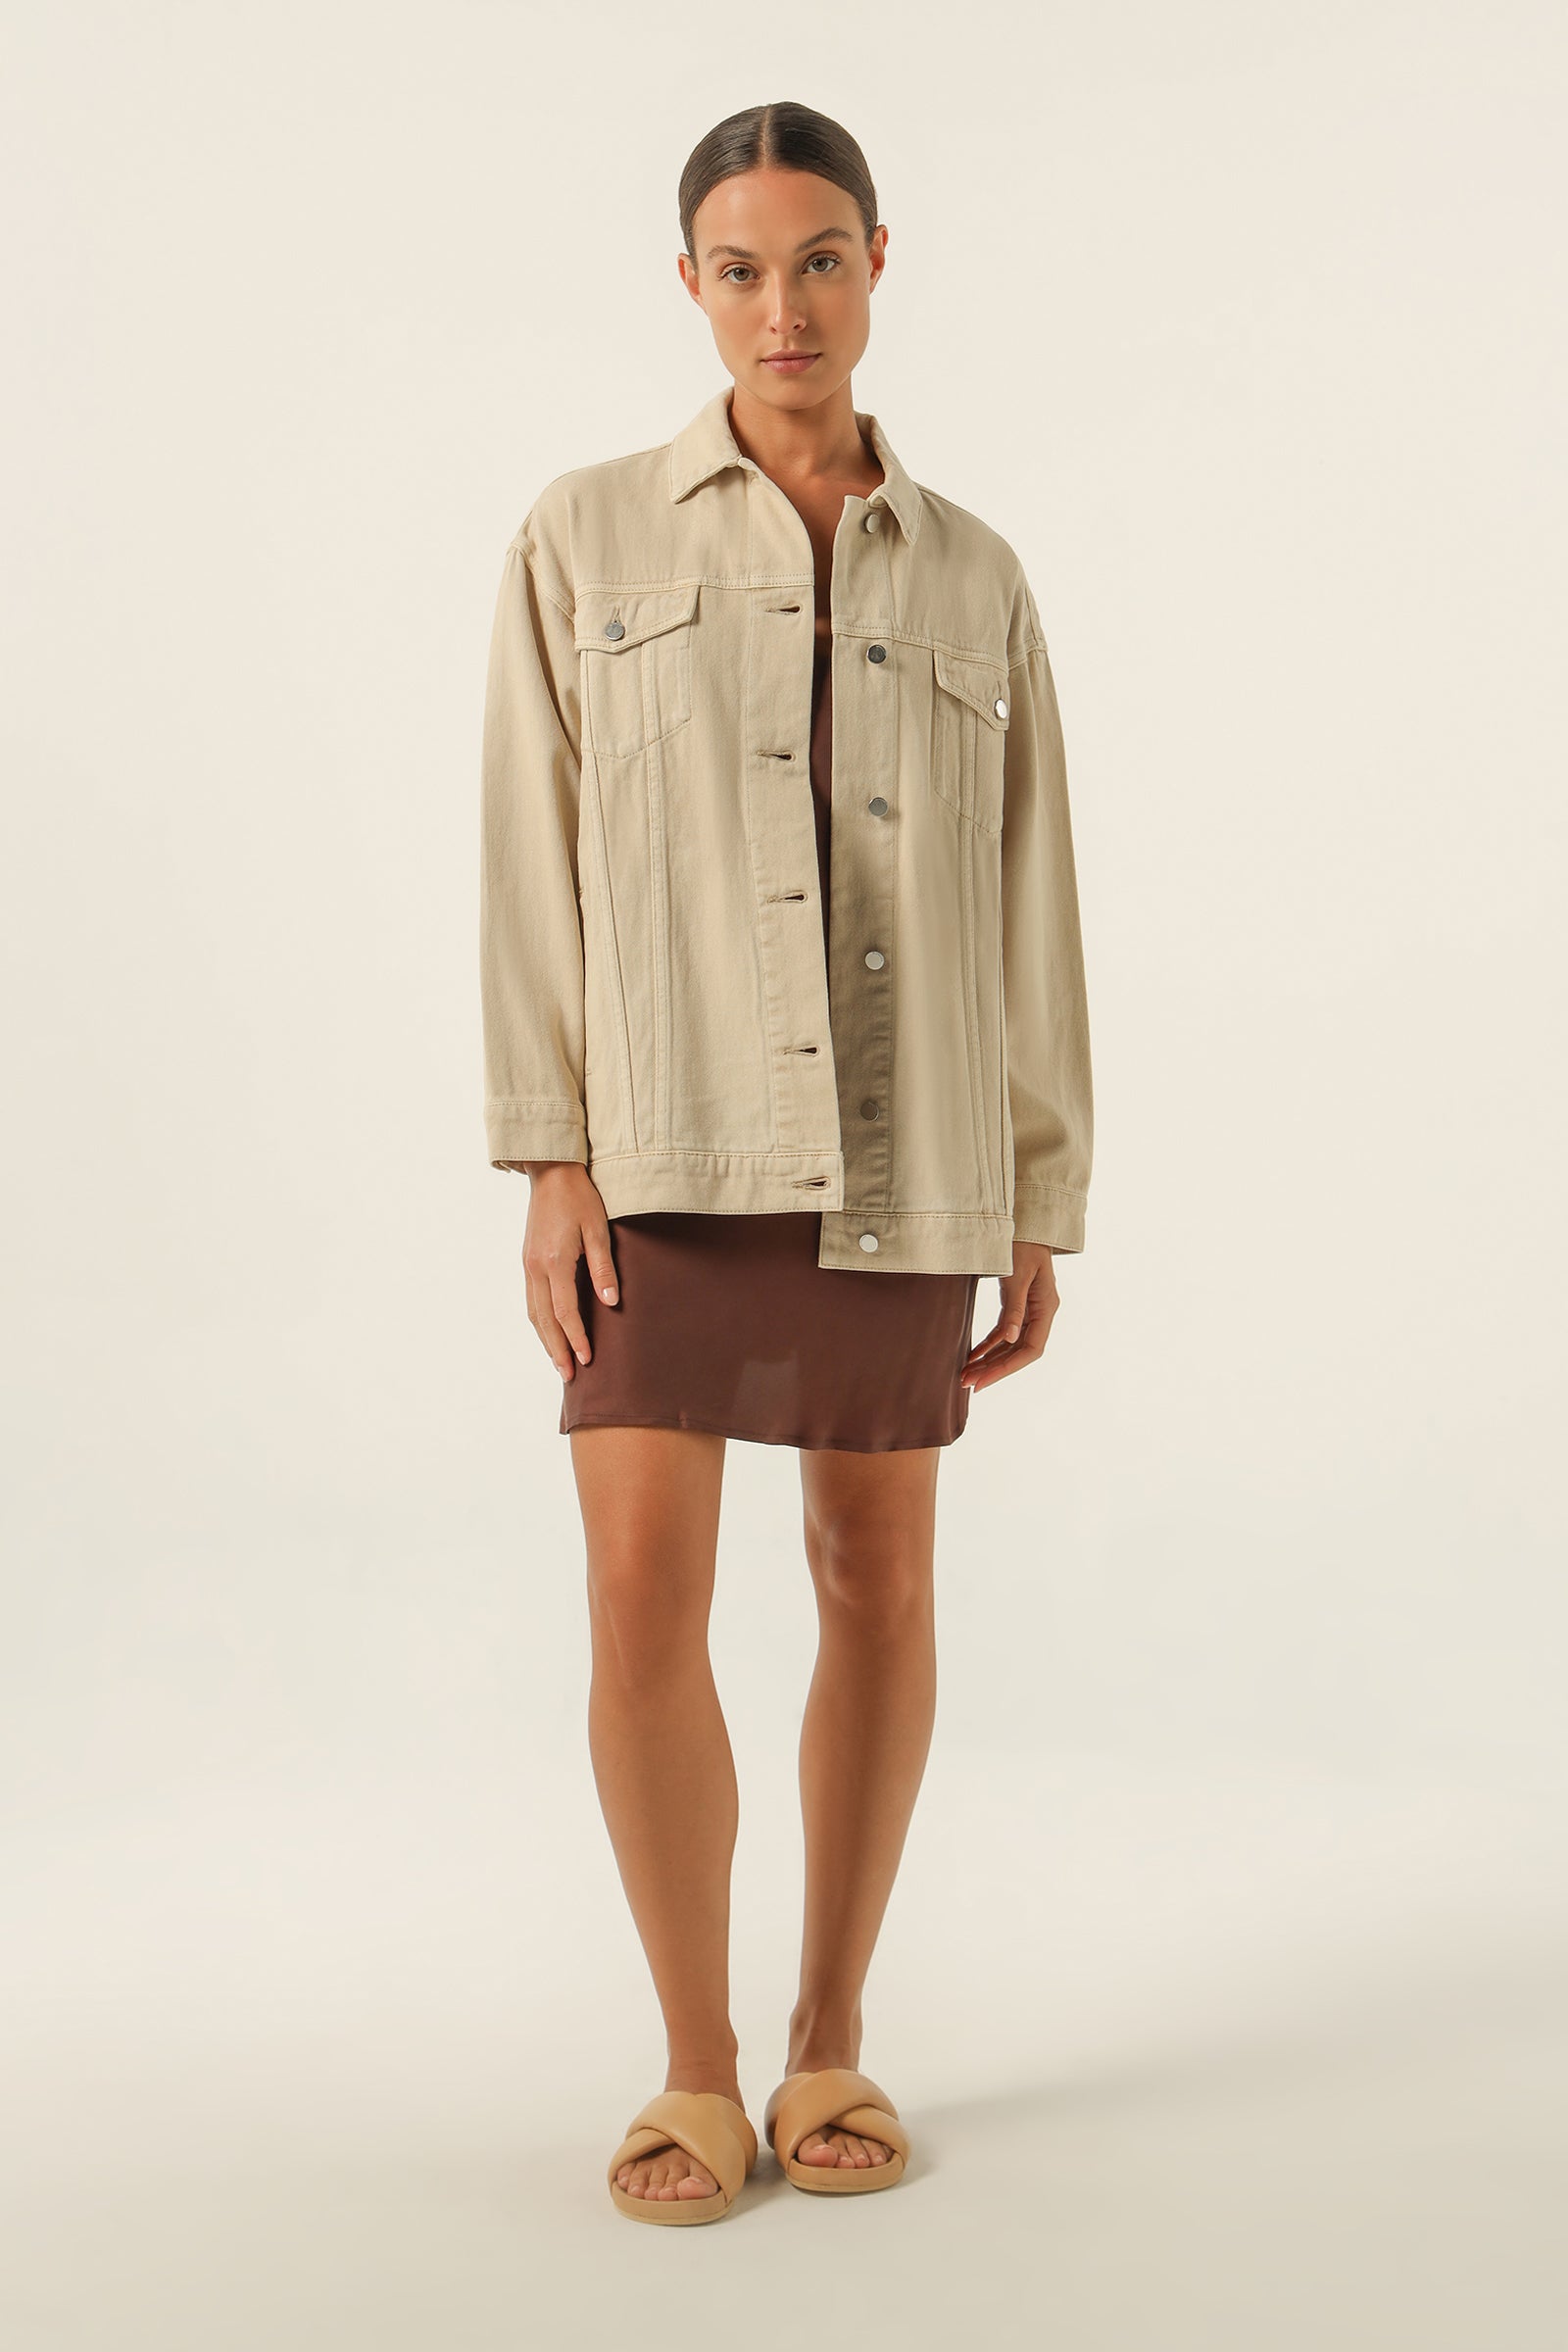 $118 Calvin Klein Men's Naturals Essential Trucker Jacket Cotton Pale Yellow  XL | eBay